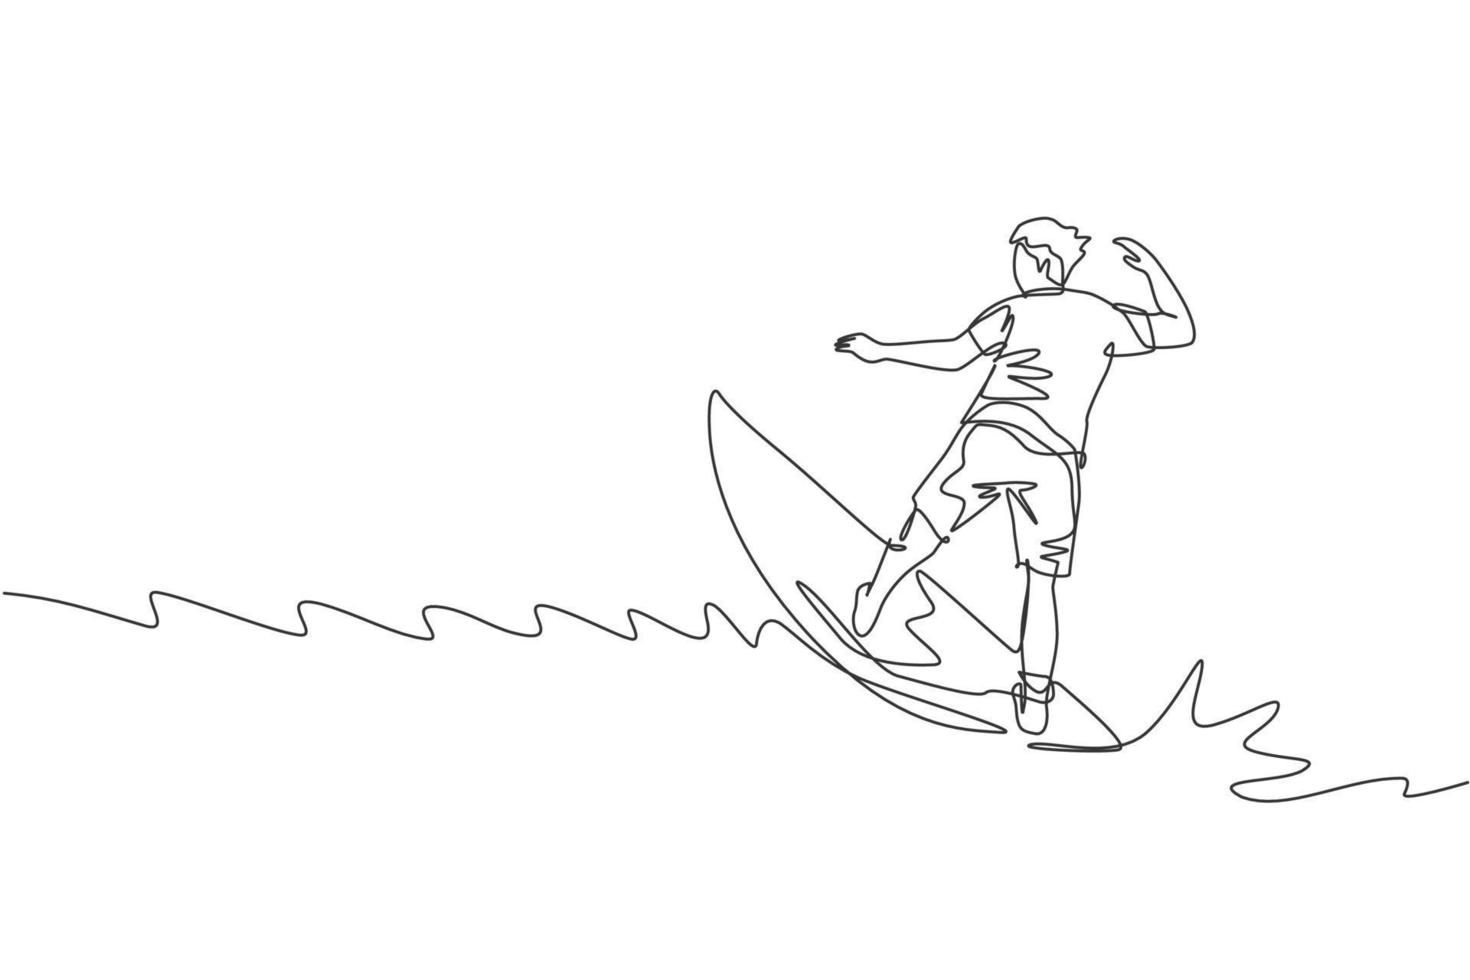 un dibujo de una sola línea de un joven surfista deportivo cabalgando sobre grandes olas en la ilustración gráfica vectorial del paraíso de la playa de surf. concepto de estilo de vida de deportes acuáticos extremos. diseño moderno de dibujo de línea continua vector